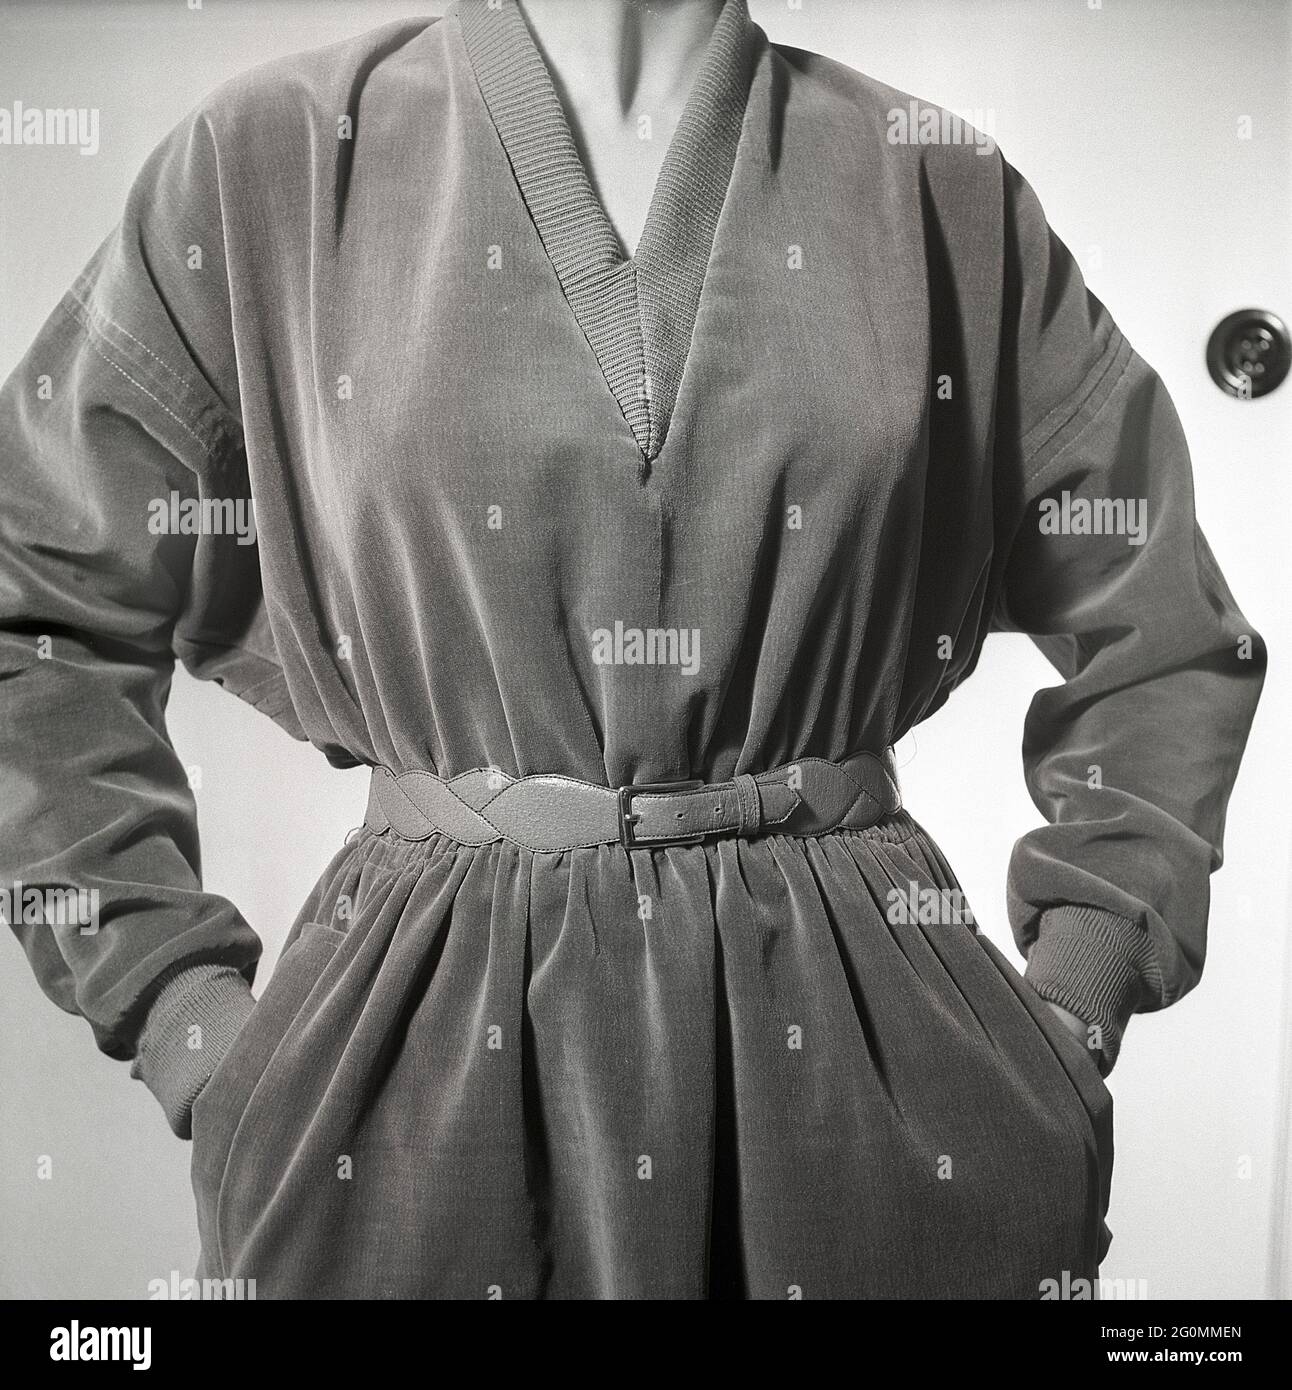 mode des années 1950. Une jeune femme dans une tenue typique des années 1950 avec une ceinture en cuir. Suède 1951 réf. BB6-5 Banque D'Images